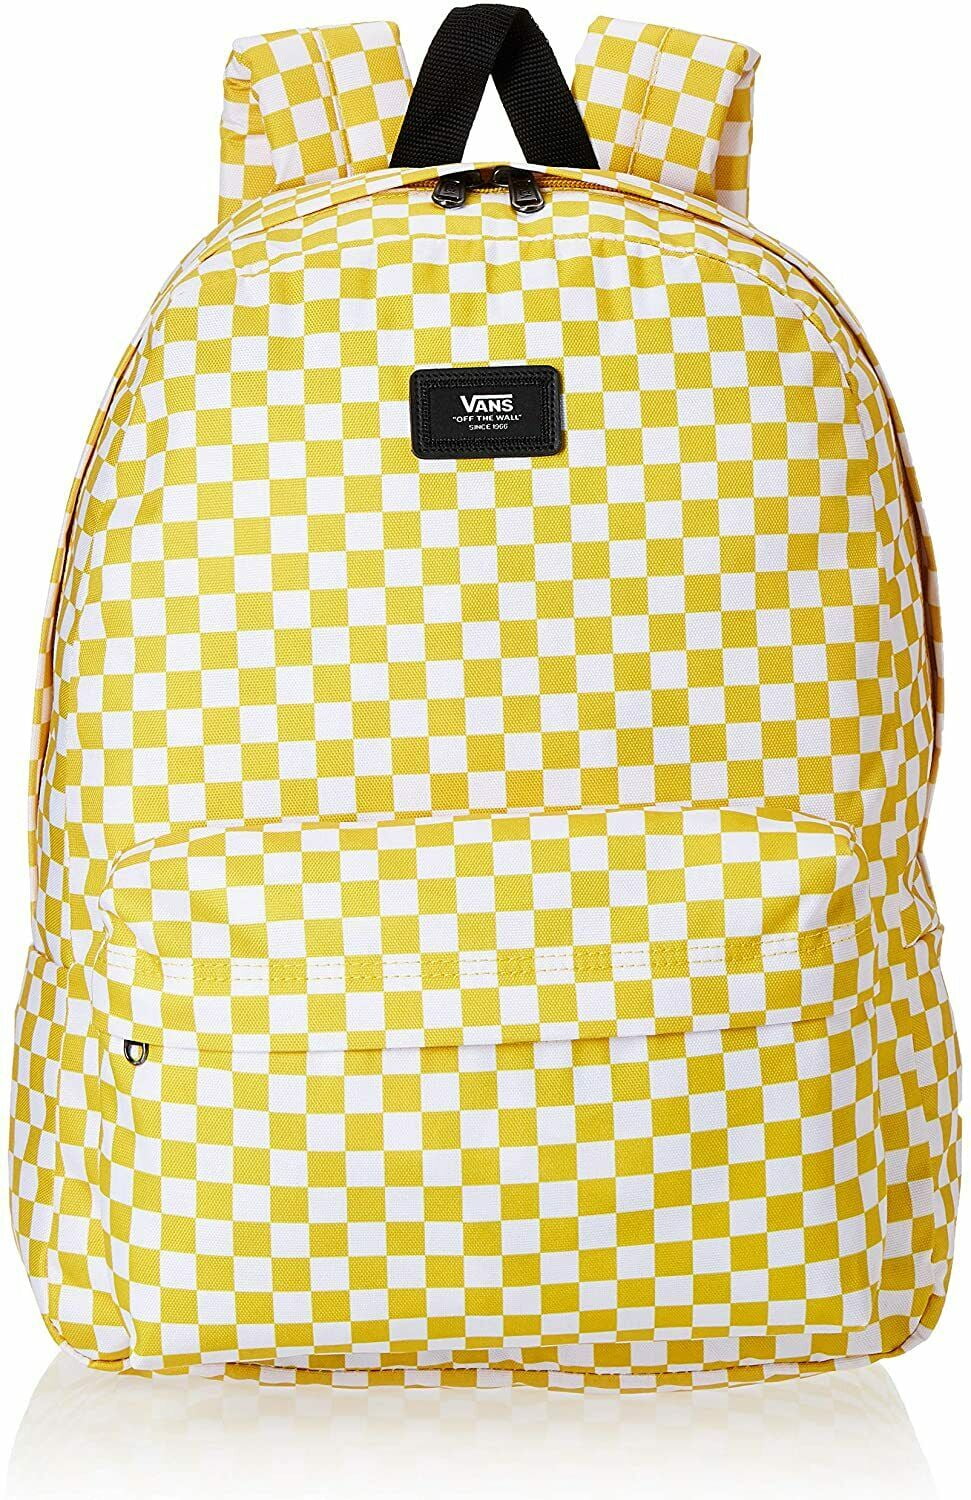 Vans Skool Checkerboard Backpack School Bag - Walmart.com